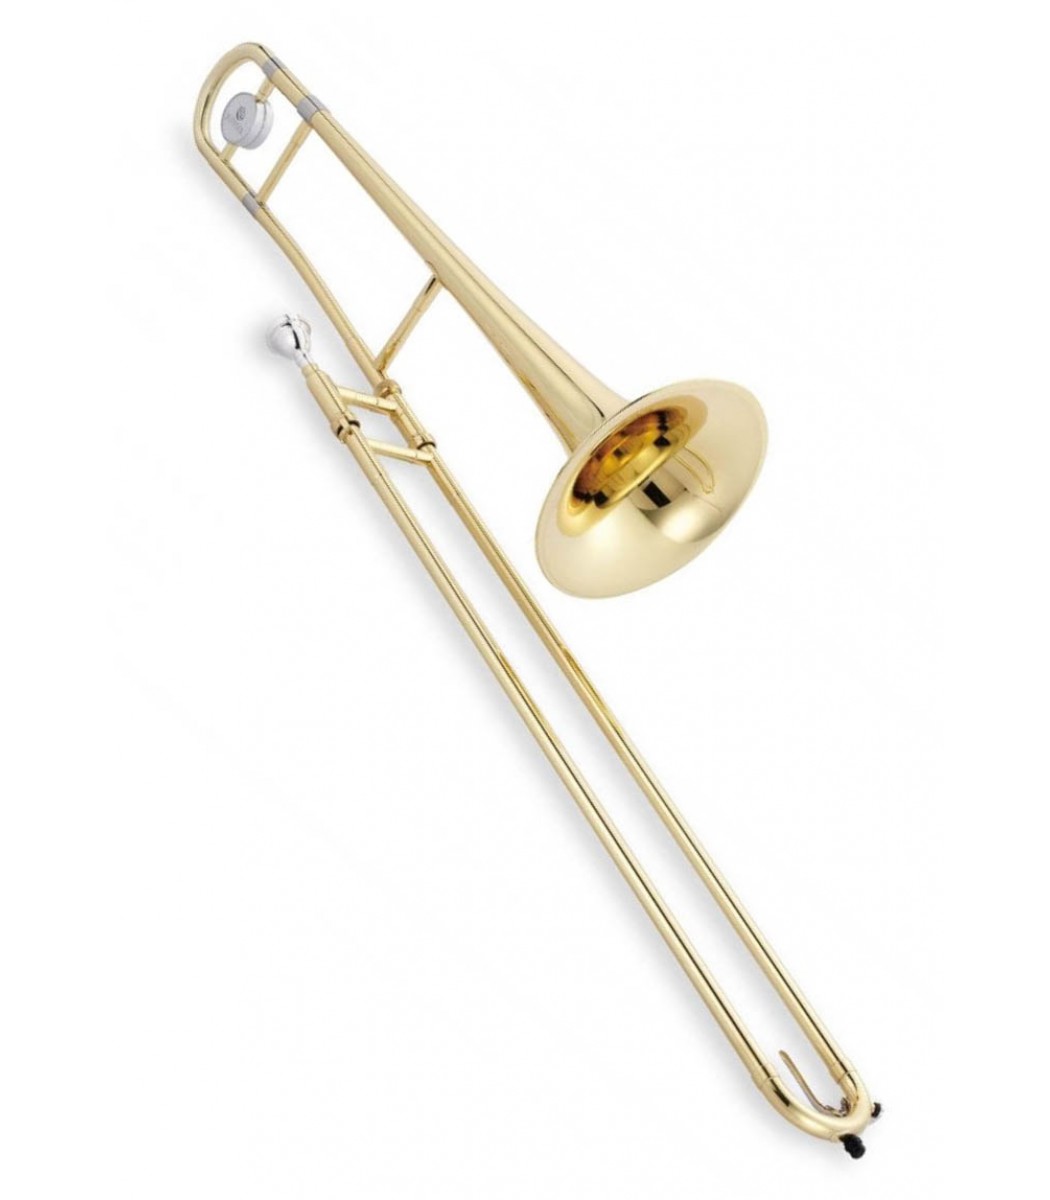 Jupiter JTB500 trombone